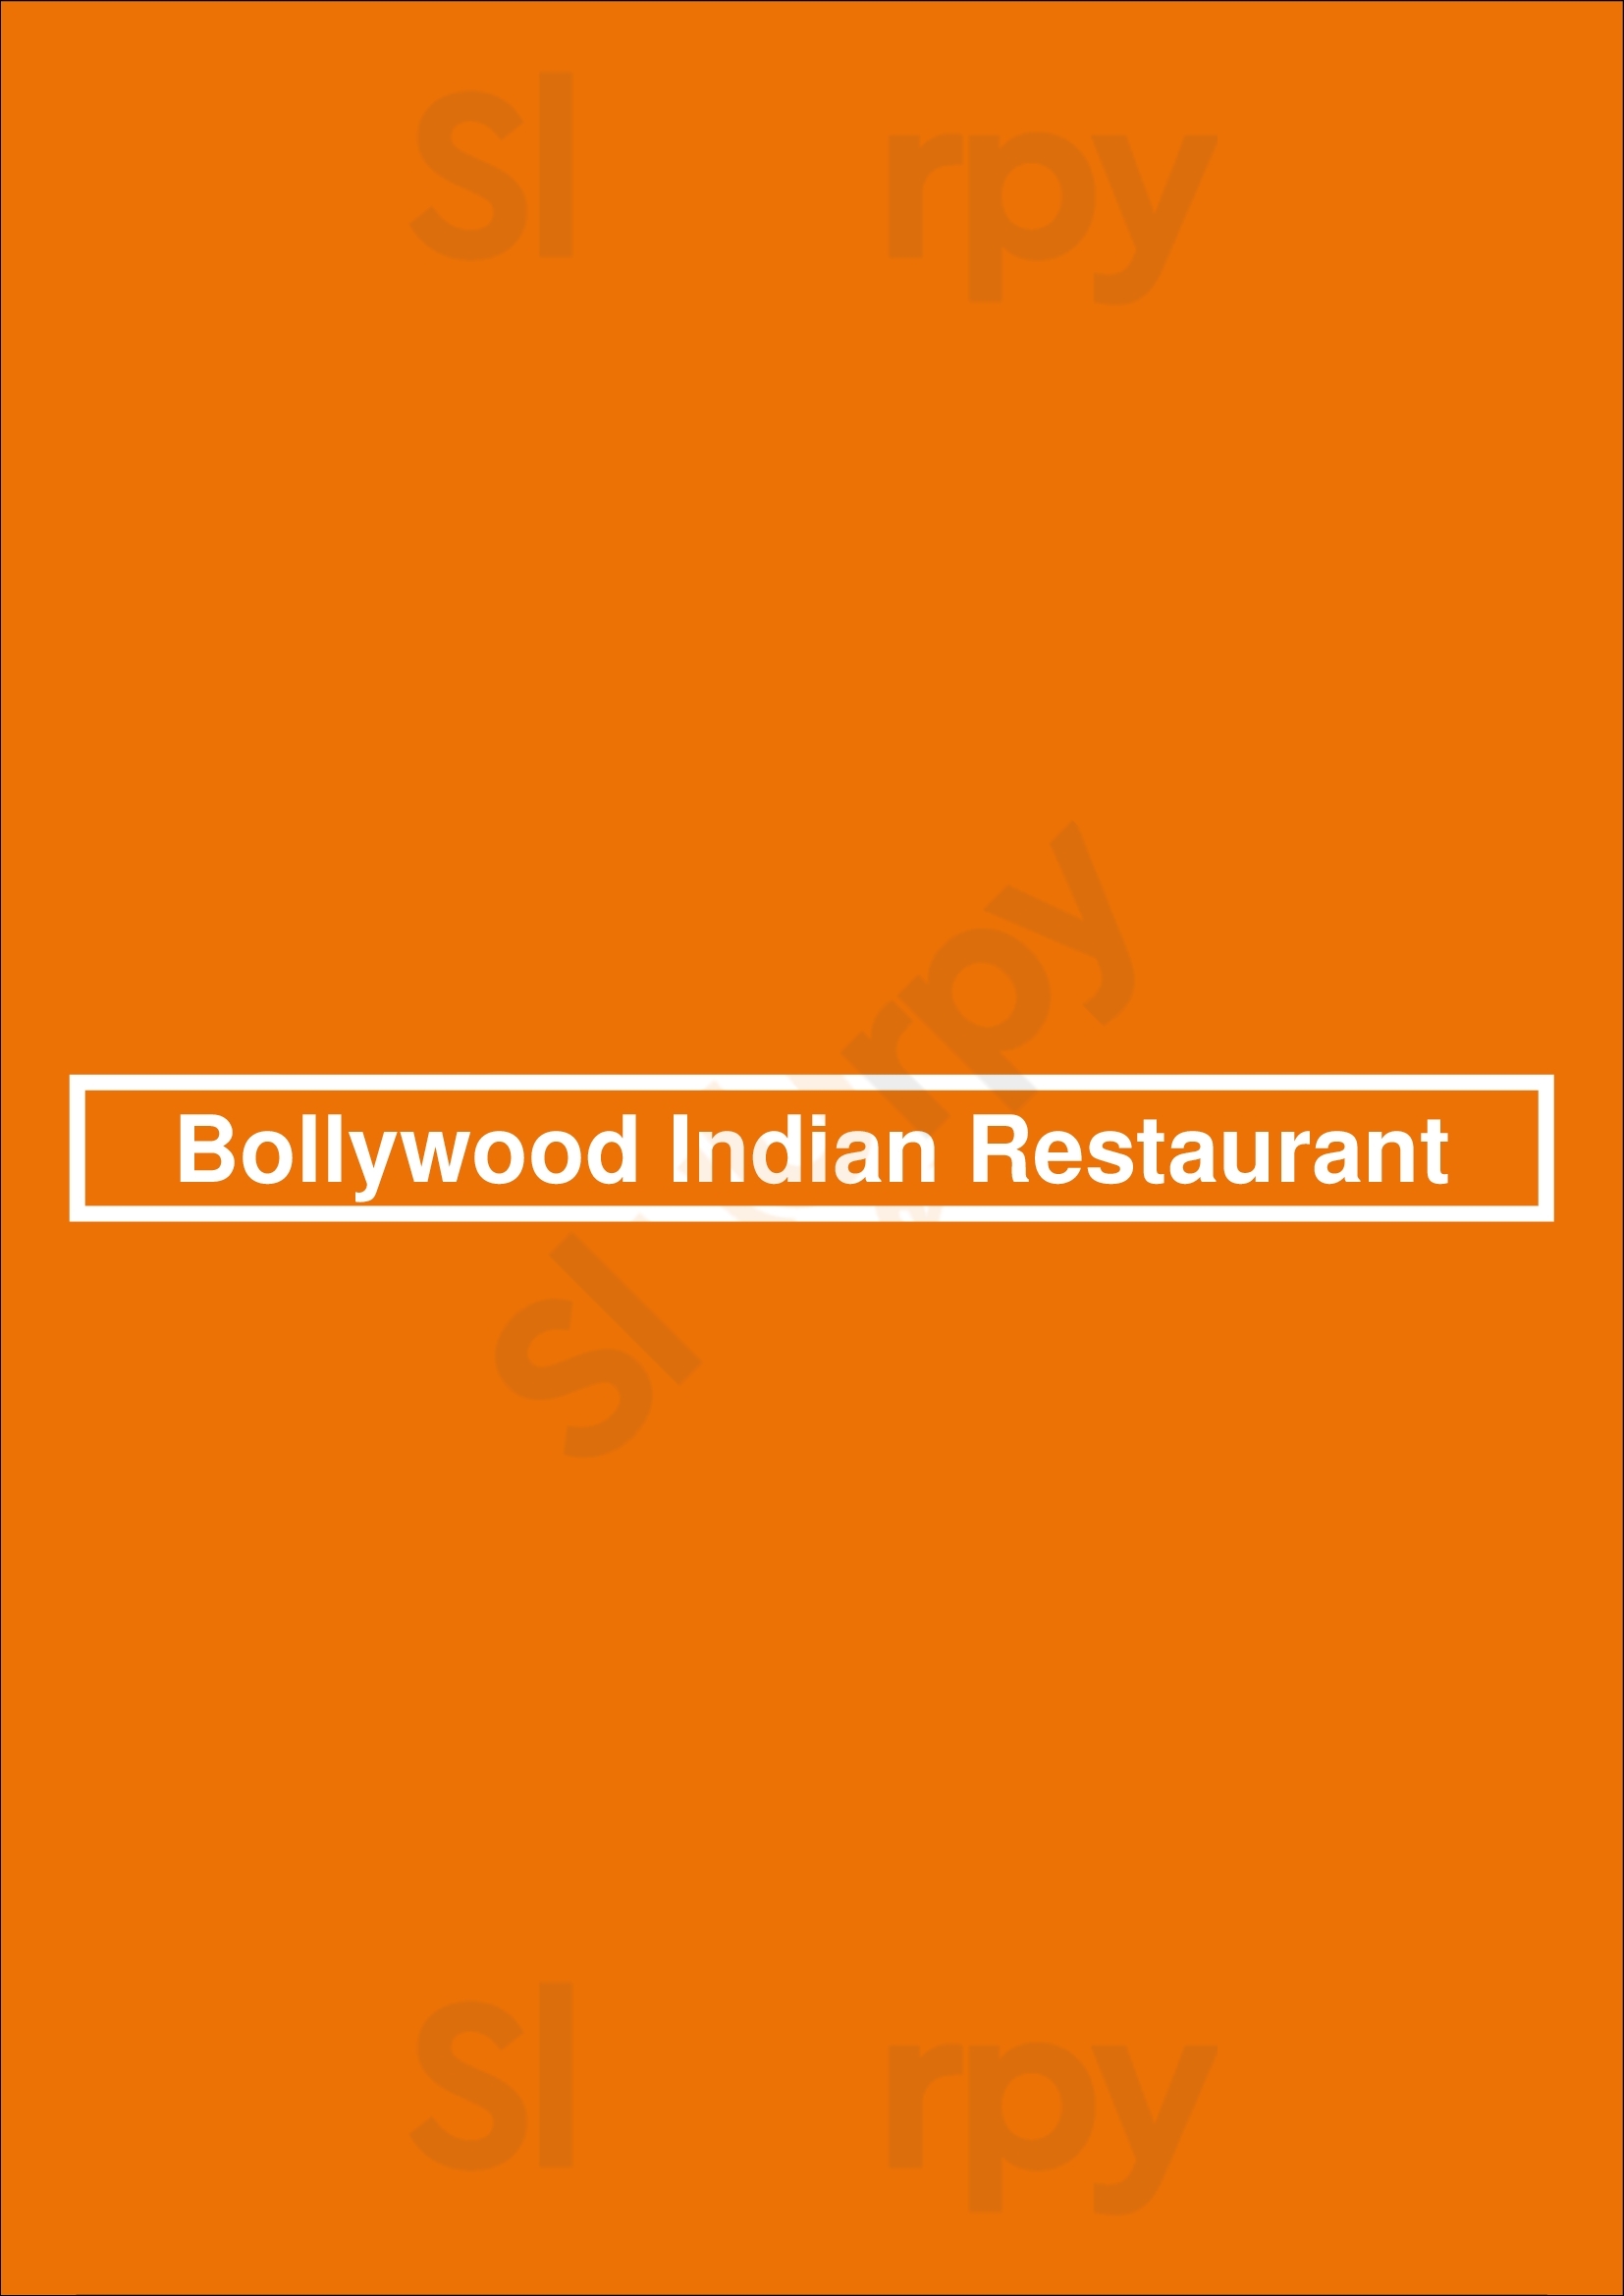 Bollywood Indian Restaurant Amsterdam Menu - 1